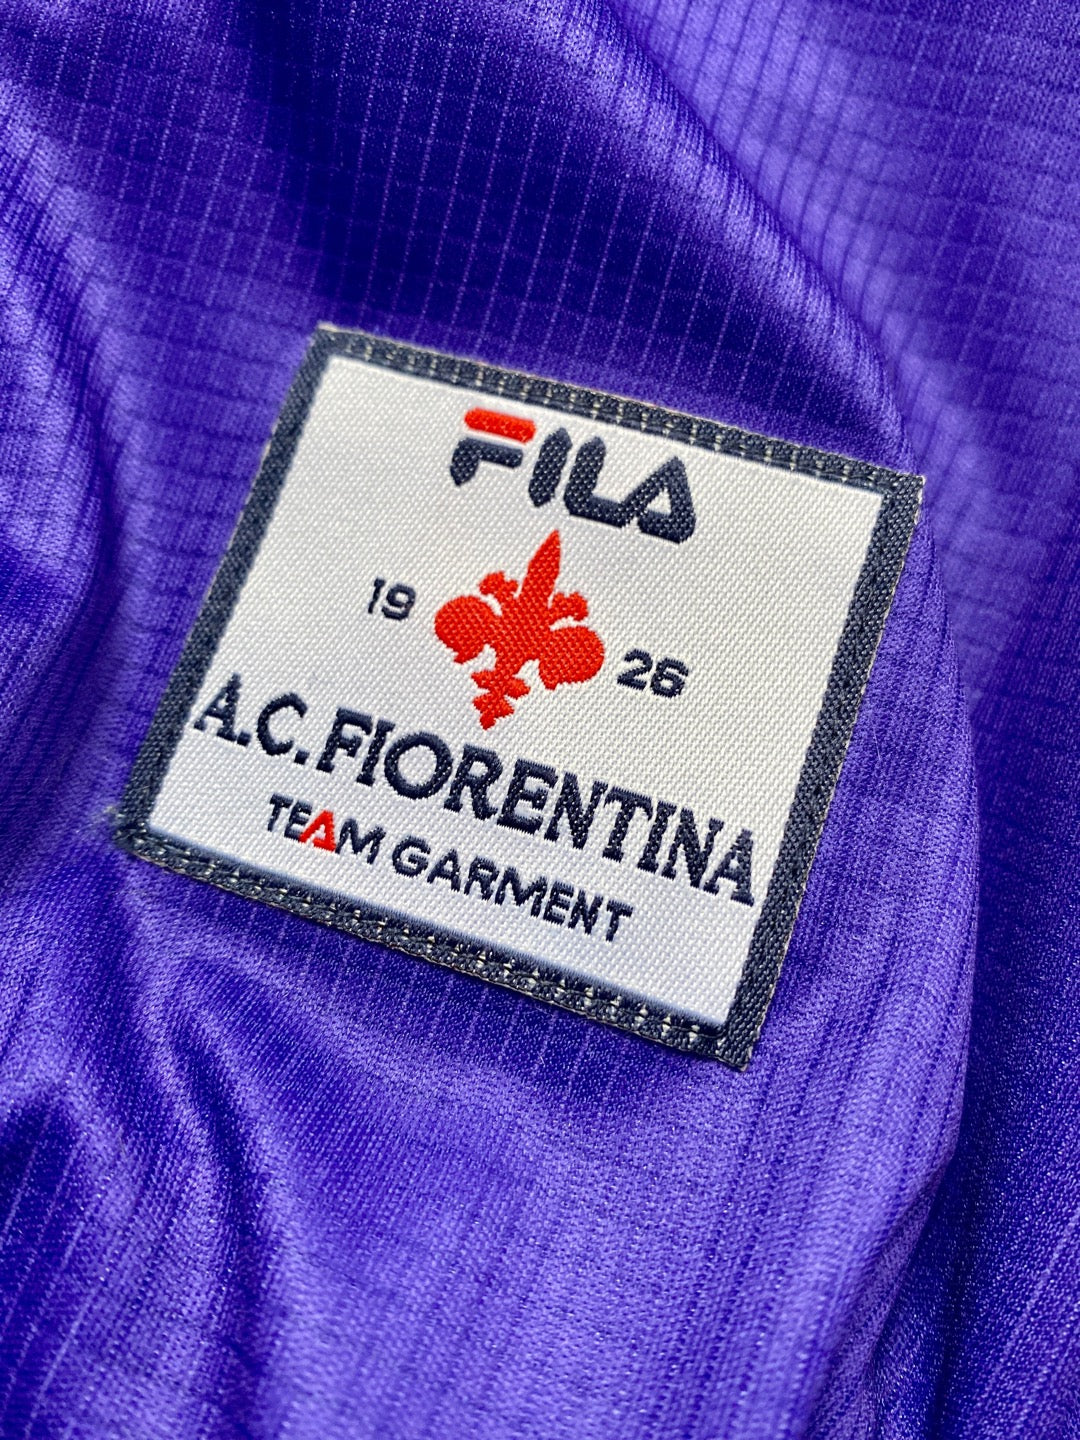 Jersey Retro Fiorentina 1998 1999 Local Batistuta etiqueta